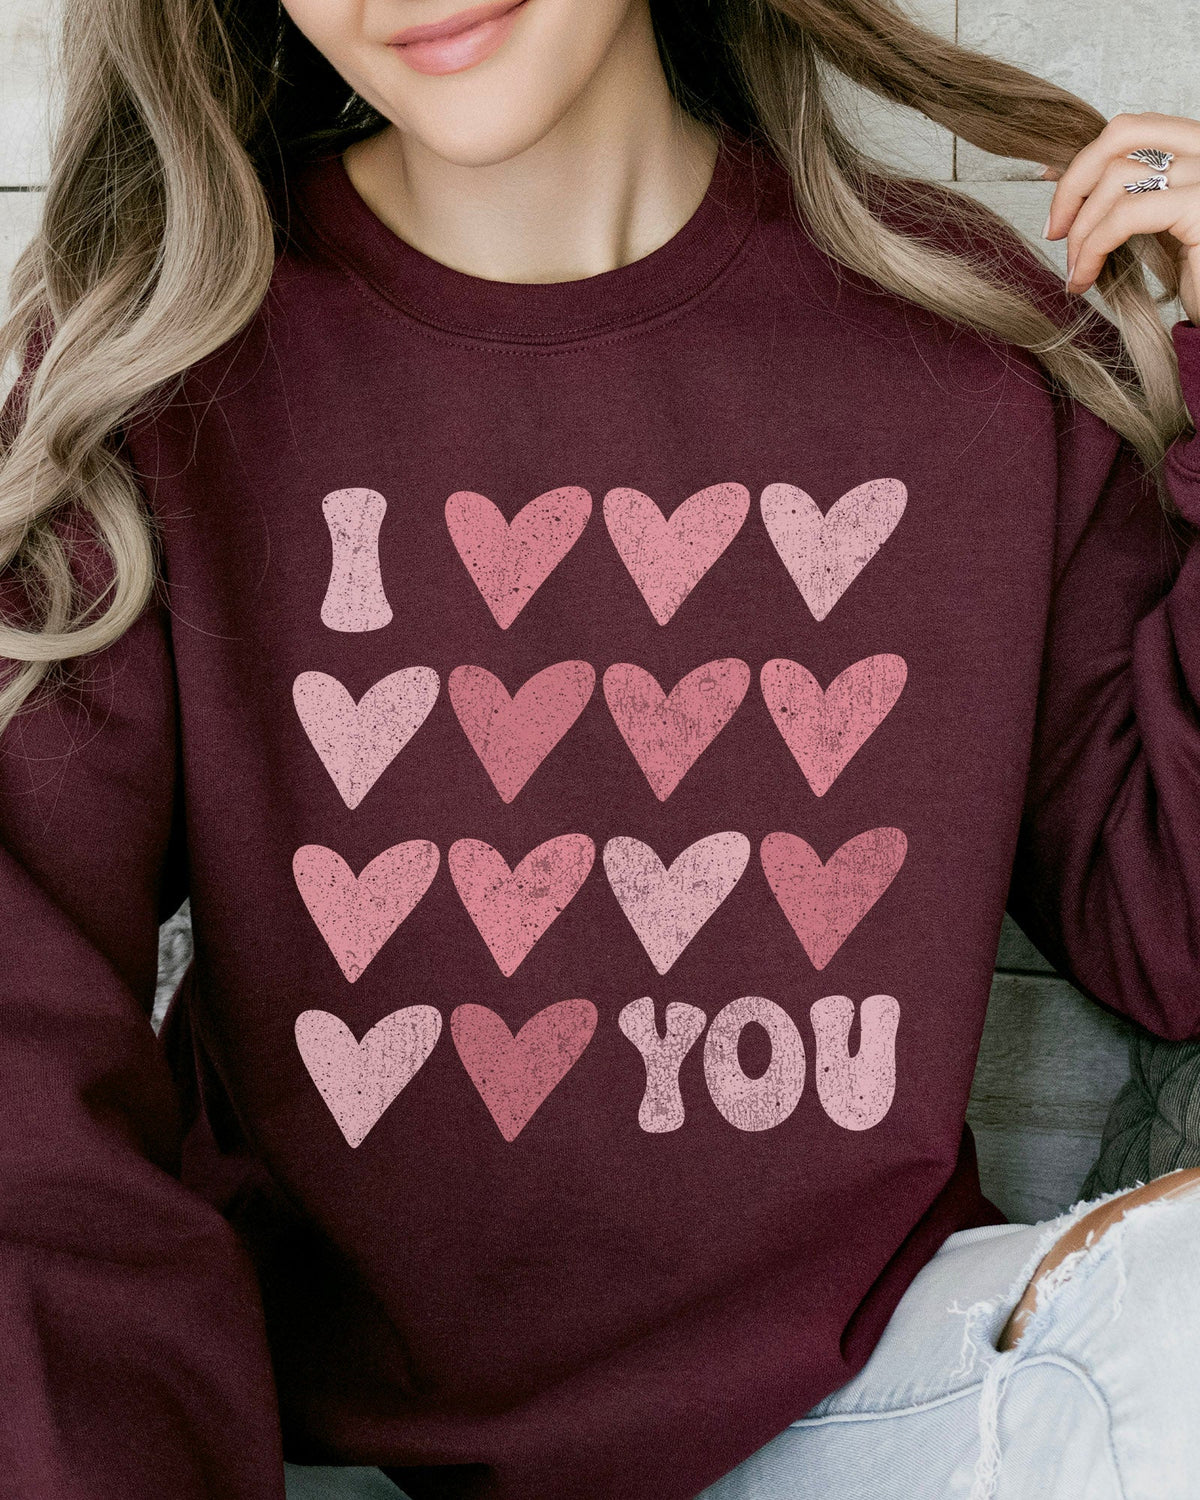 I Heart You Sweatshirt